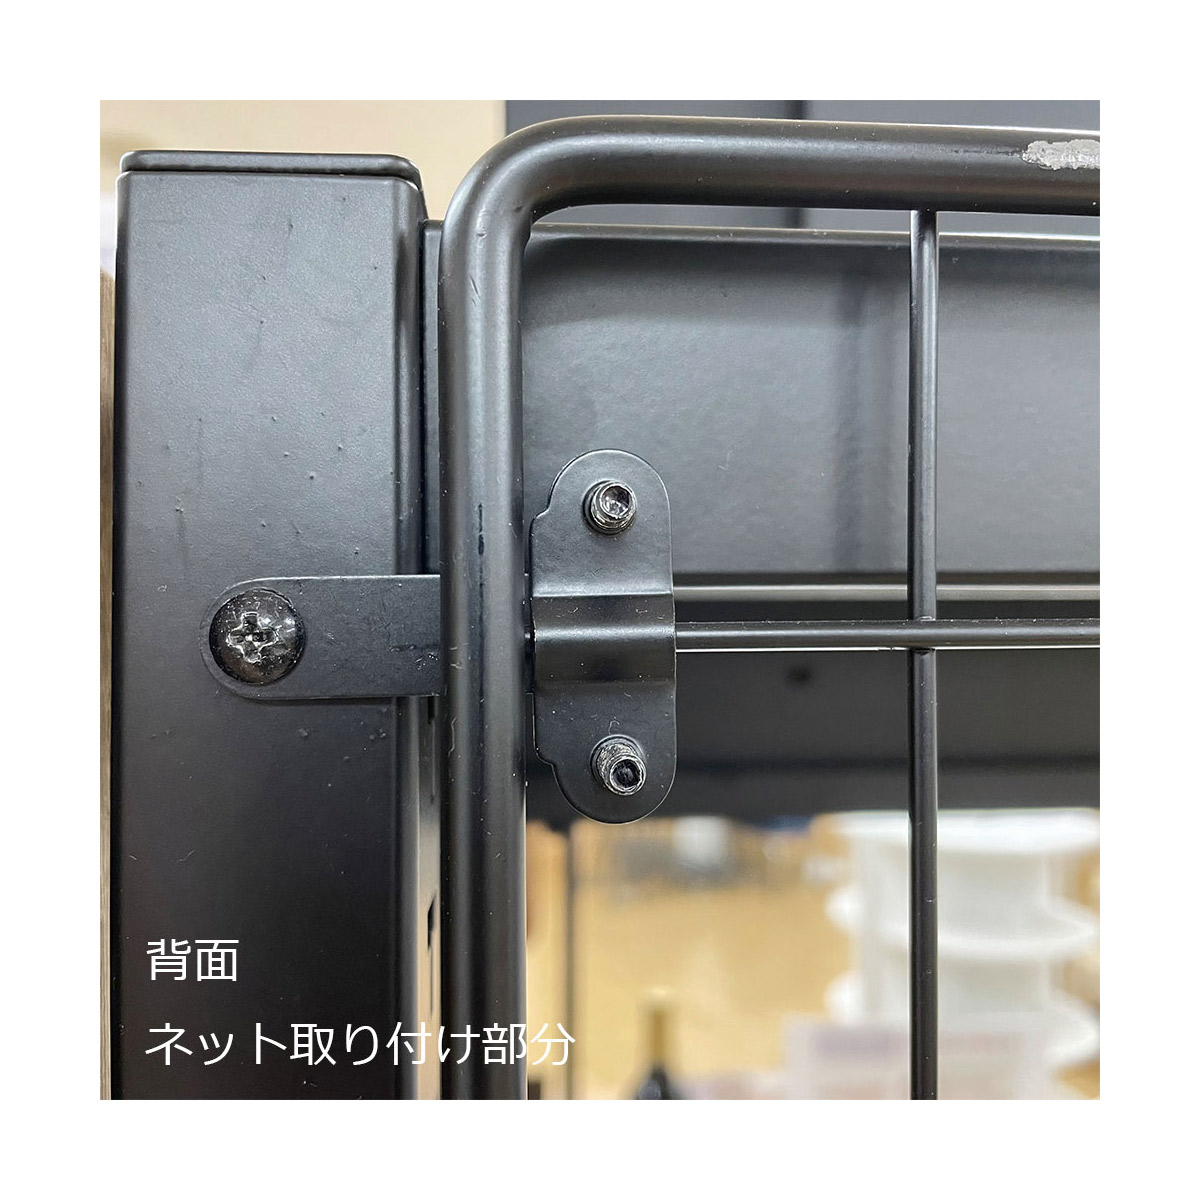 TR ネットタイプ W90cm 連結 ブラック H150cm 【通販】ストア・エキスプレス